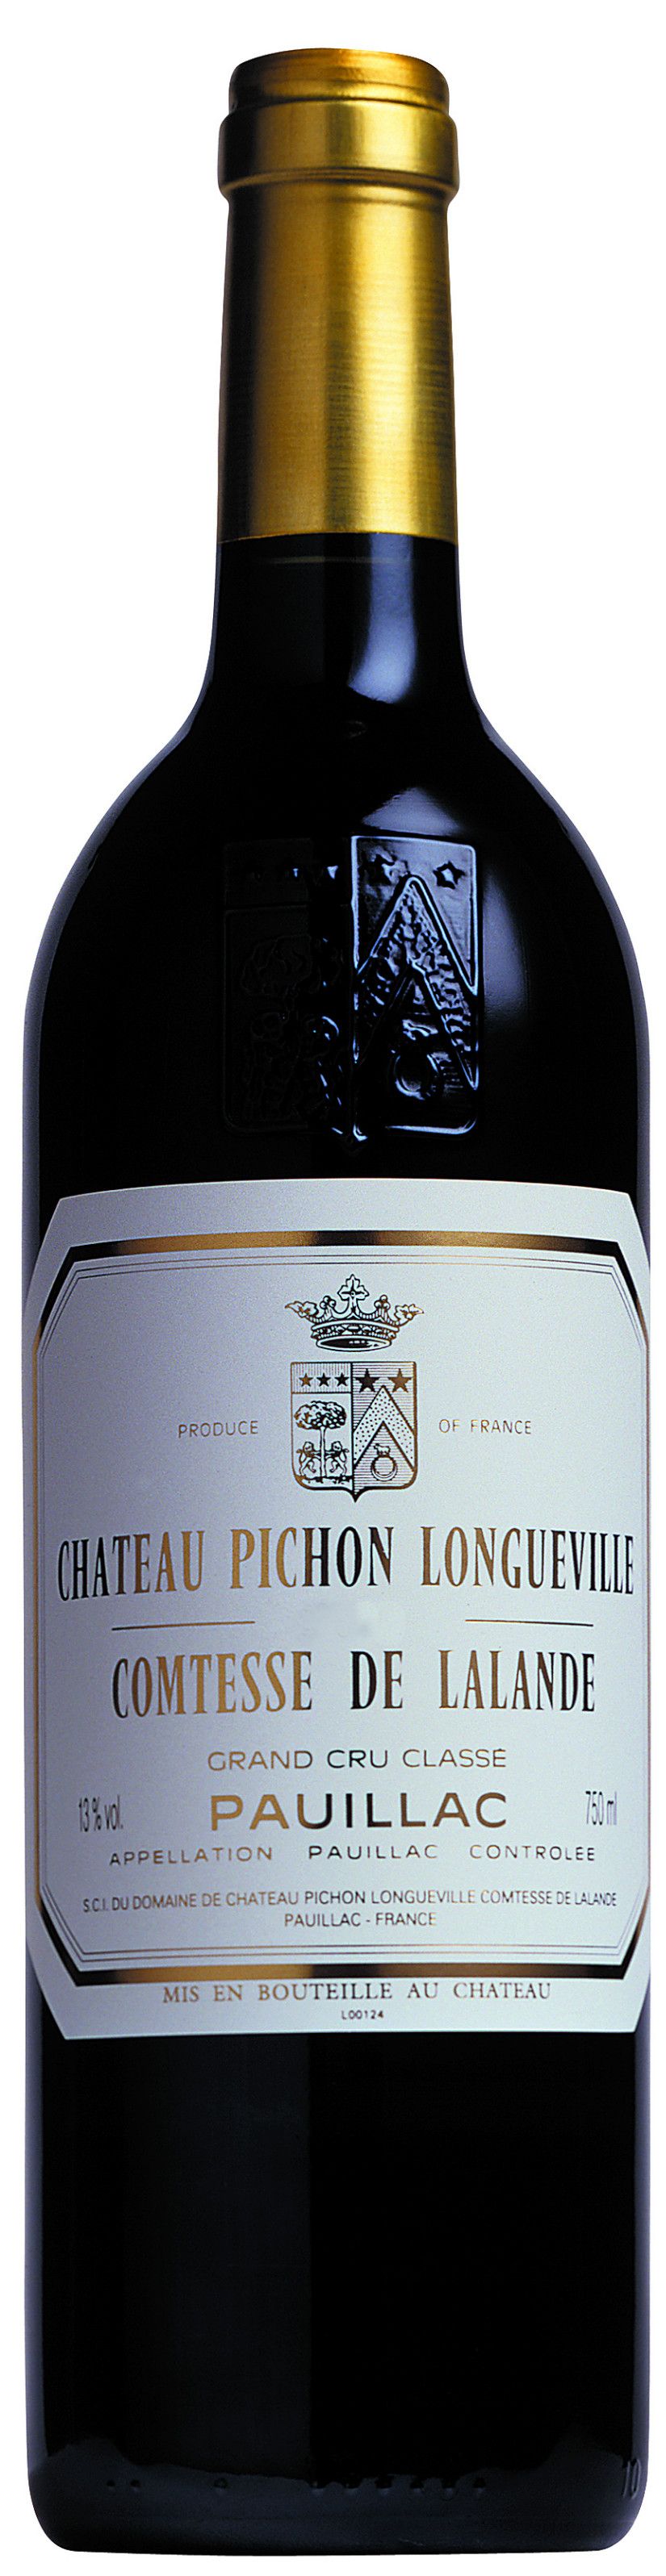 Chateau Pichon-Longueville Comtesse De Lalande, 1995